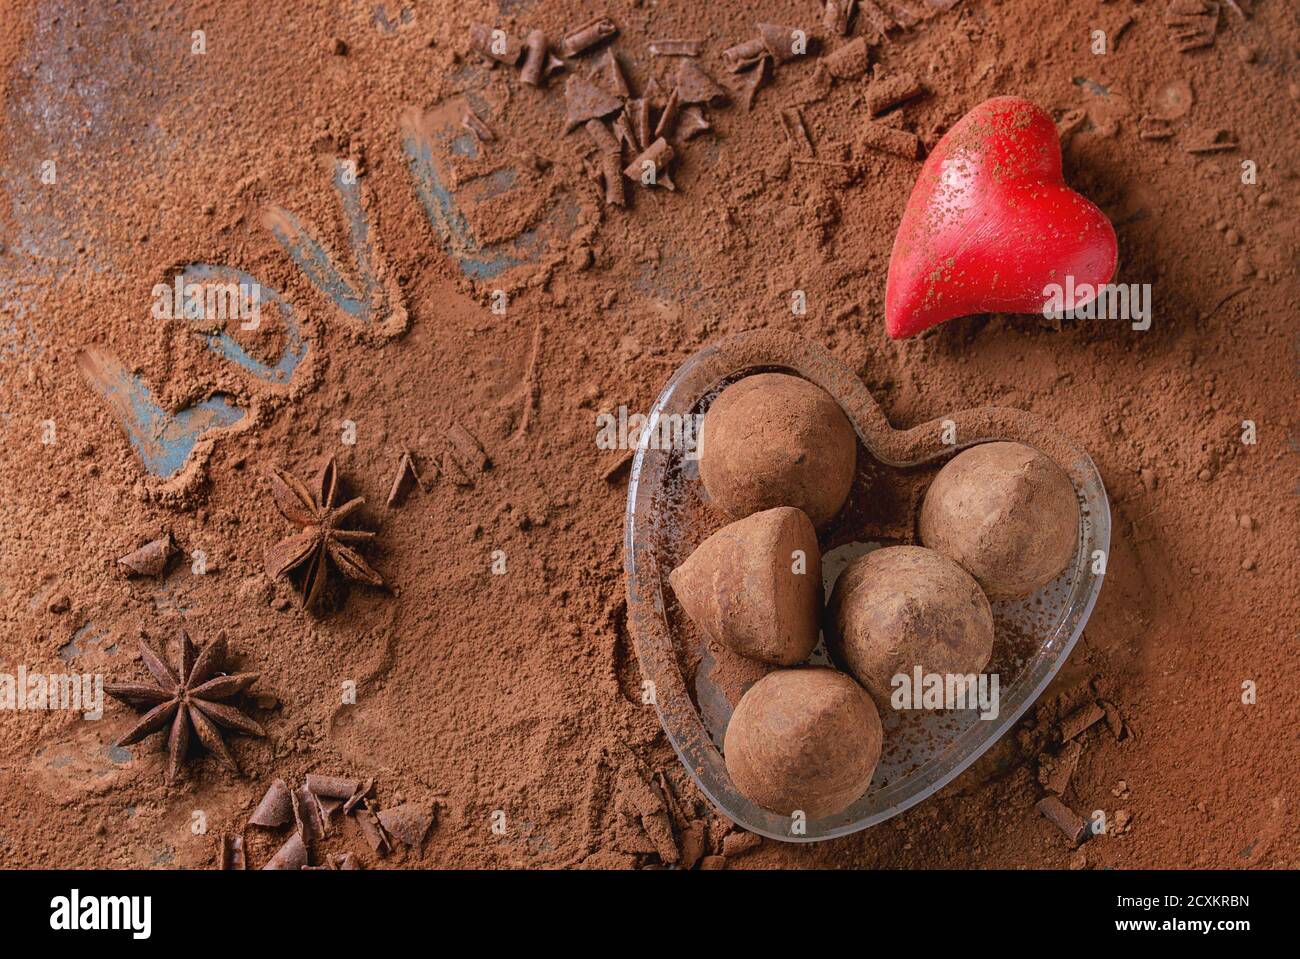 Truffes au chocolat en coeur de verre sur fond en poudre de cacao avec coeurs de Saint-Valentin, étoiles anis et amour lettrage. Vue de dessus. Cadeau pour la Saint-Valentin Banque D'Images